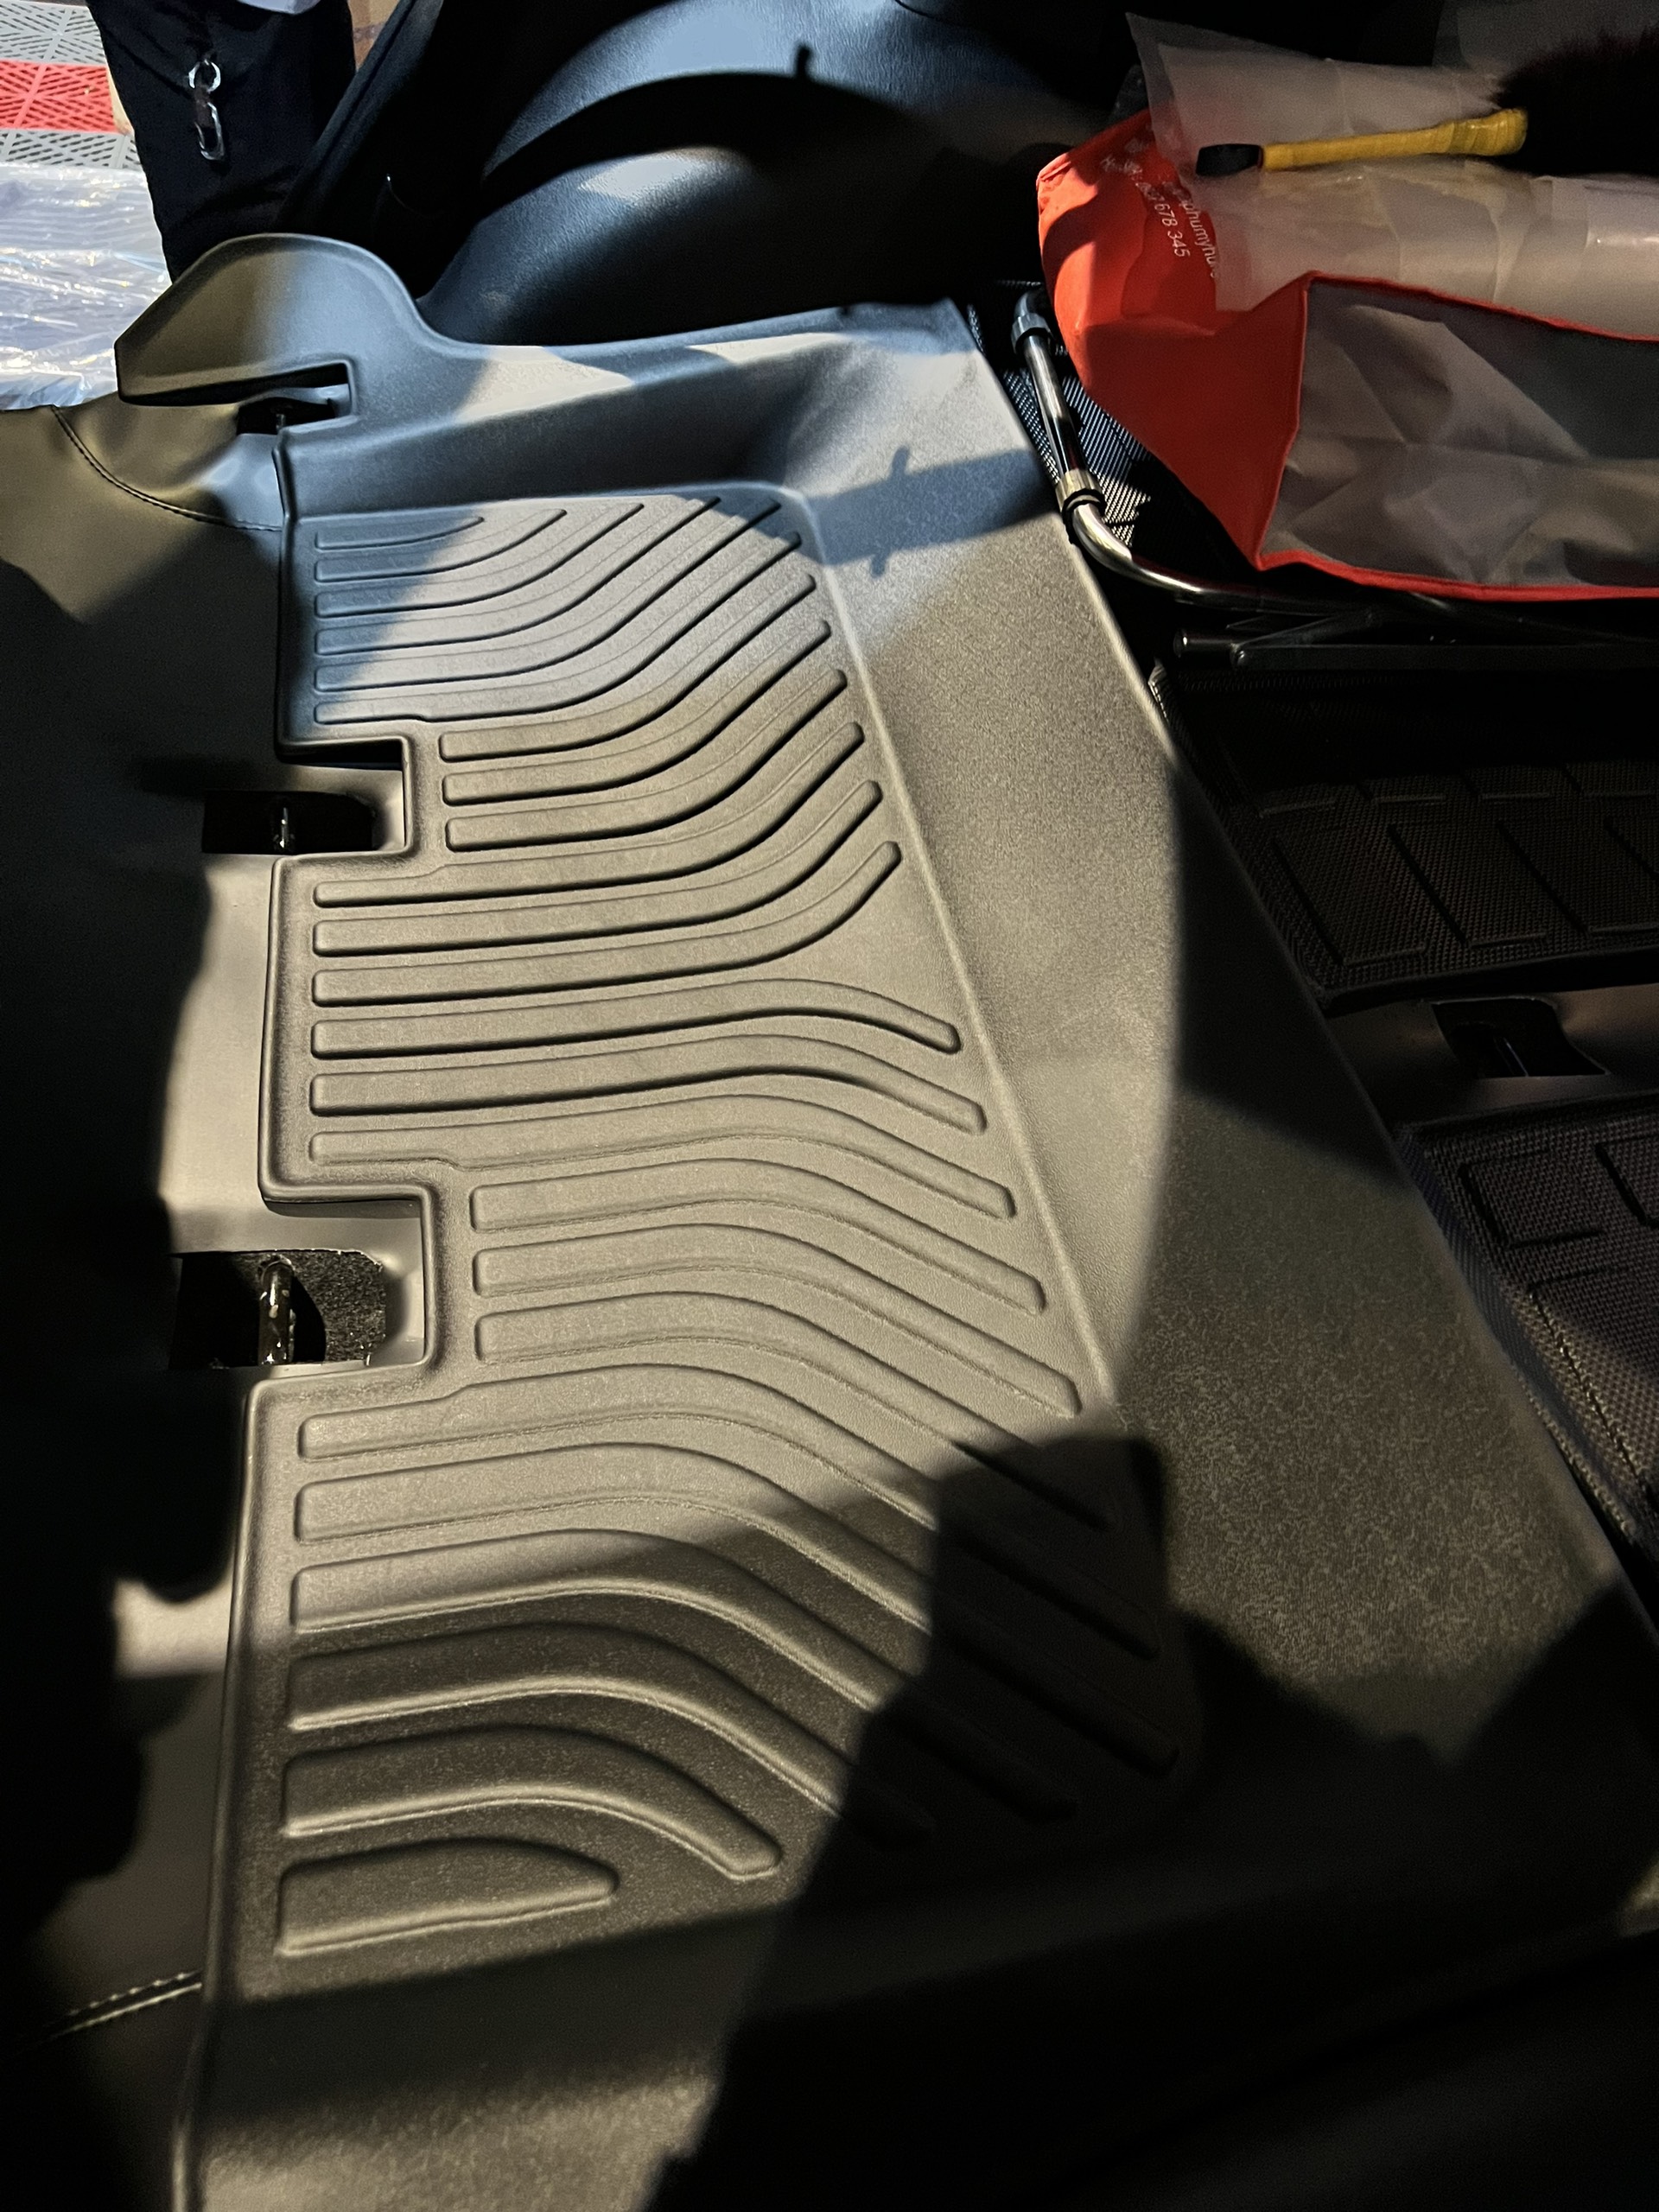 Thảm lót sàn xe ô tô Toyota Innova 2016-2022 tới nay Nhãn hiệu Macsim chất liệu nhựa TPE cao cấp màu đen